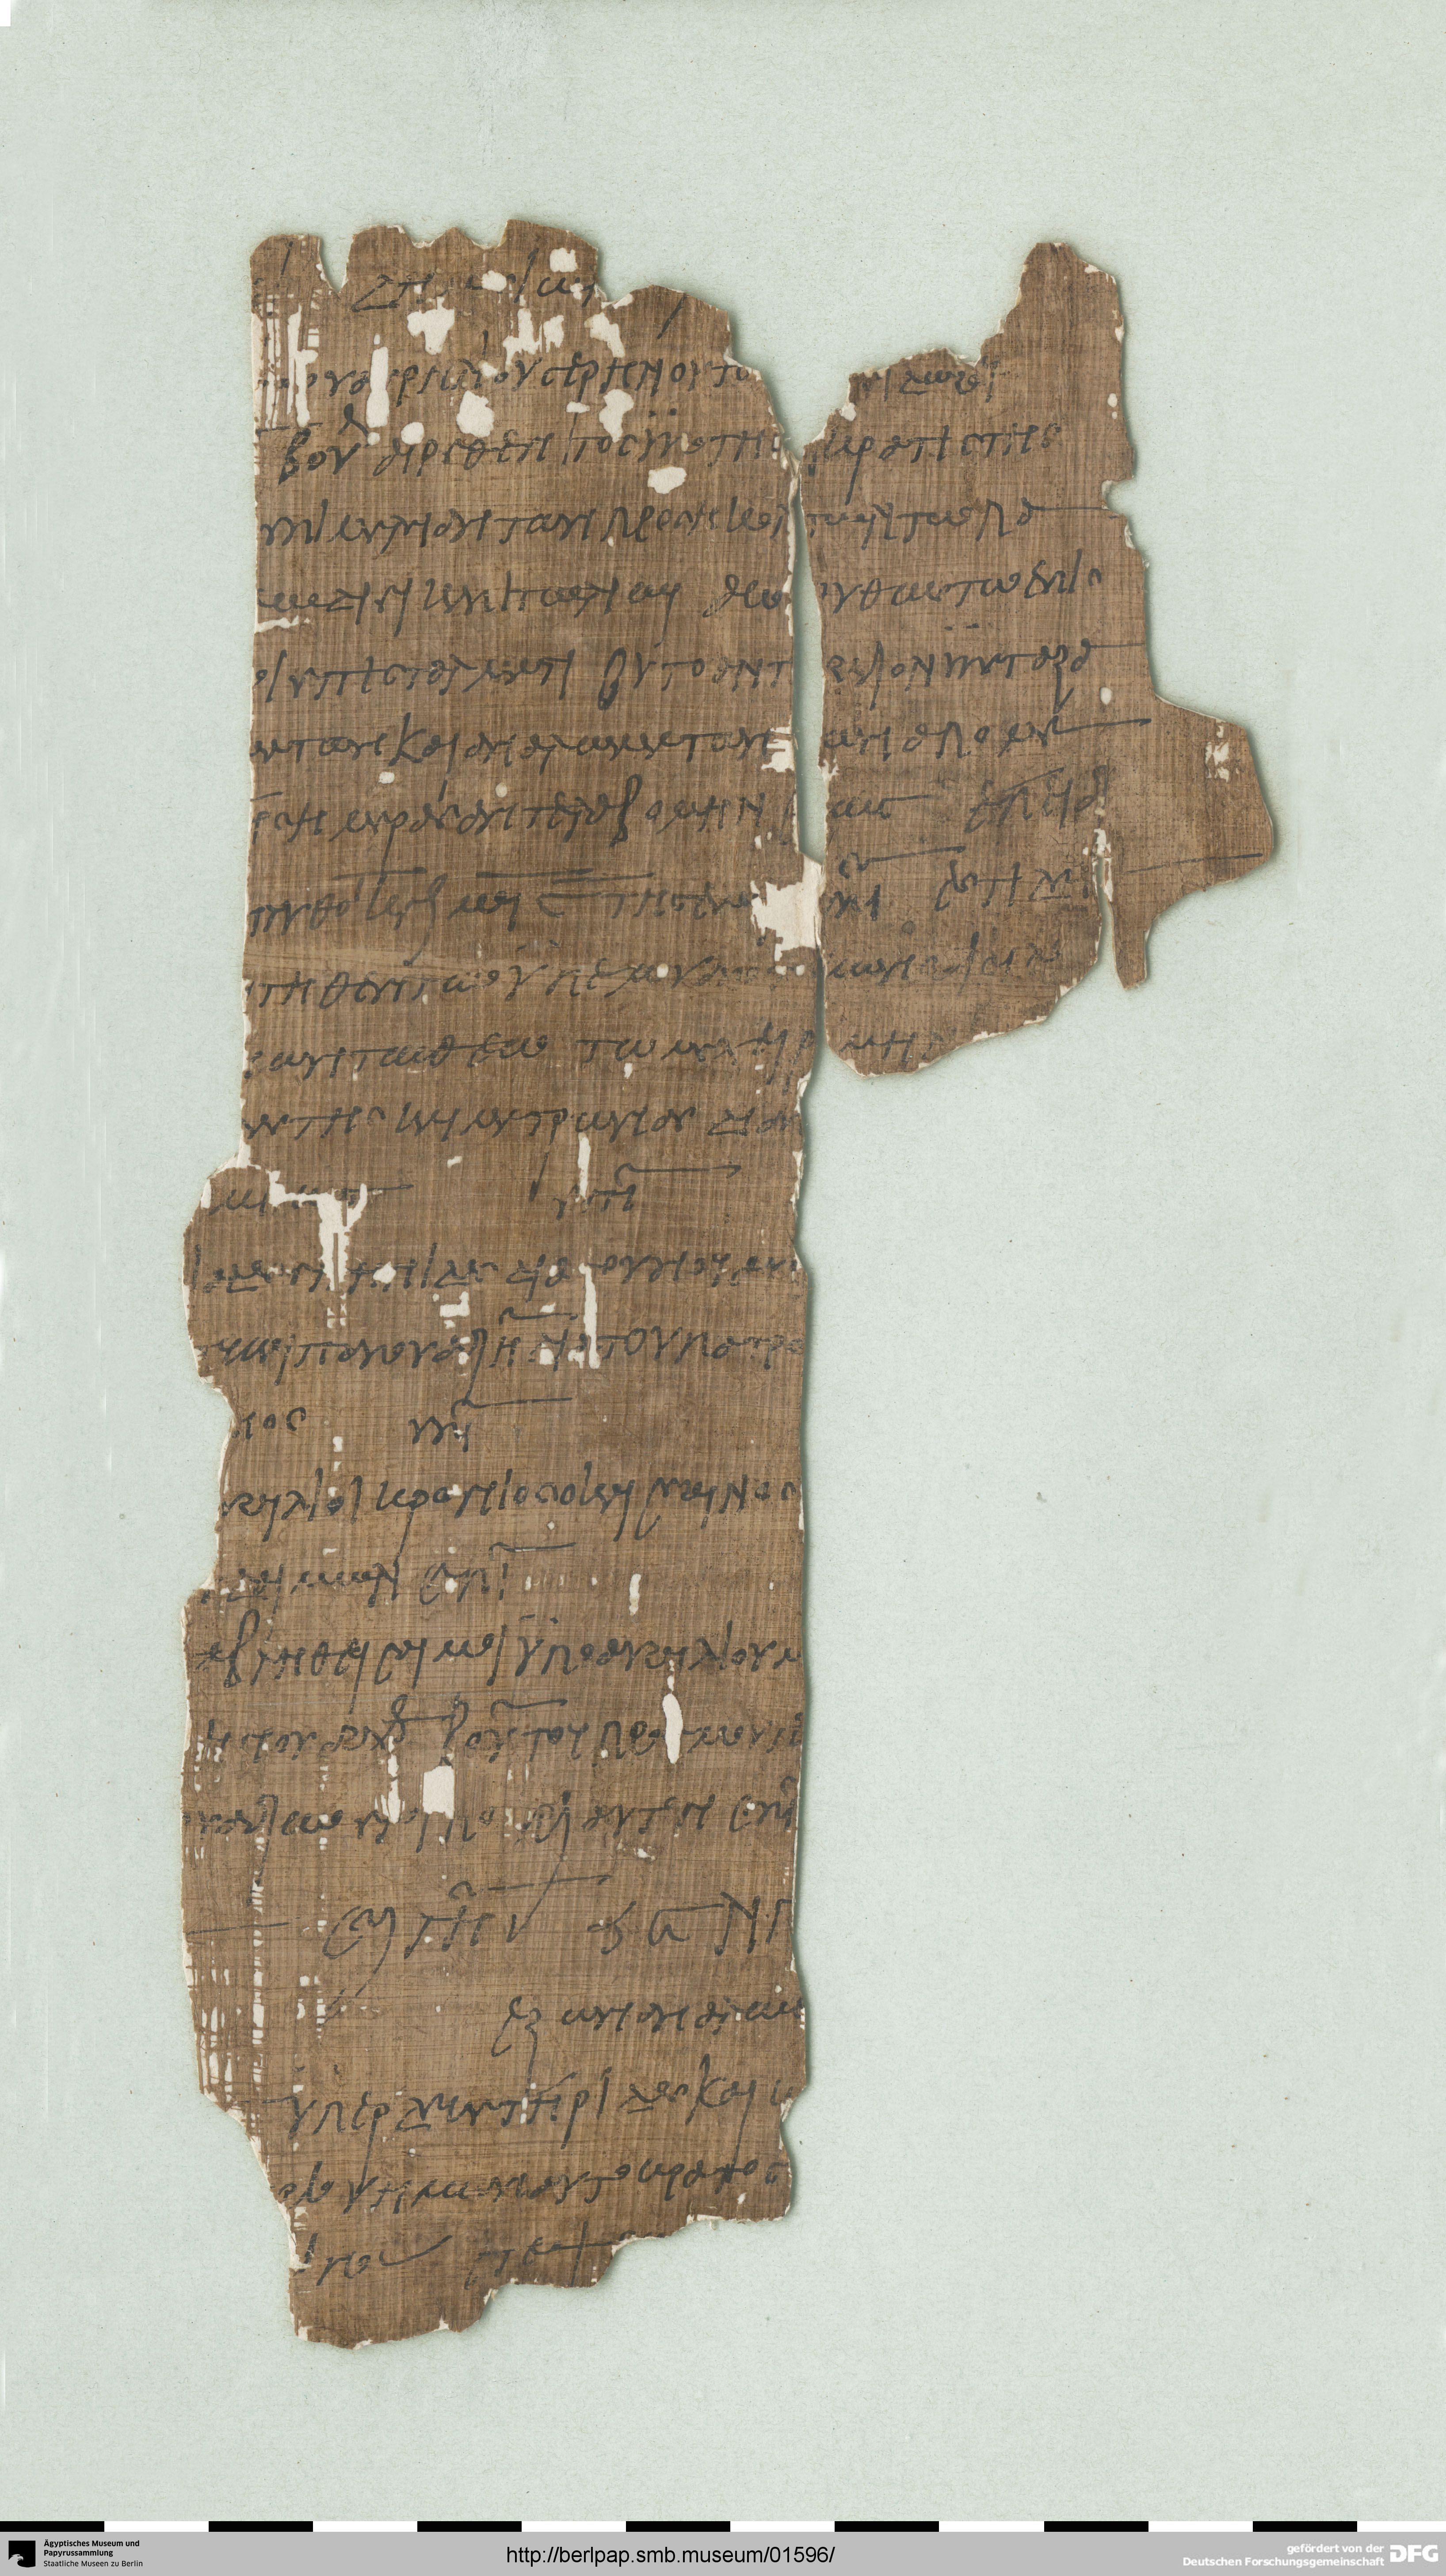 http://berlpap.smb.museum/Original/P_05083_R_001.jpg (Ägyptisches Museum und Papyrussammlung, Staatliche Museen zu Berlin CC BY-NC-SA)